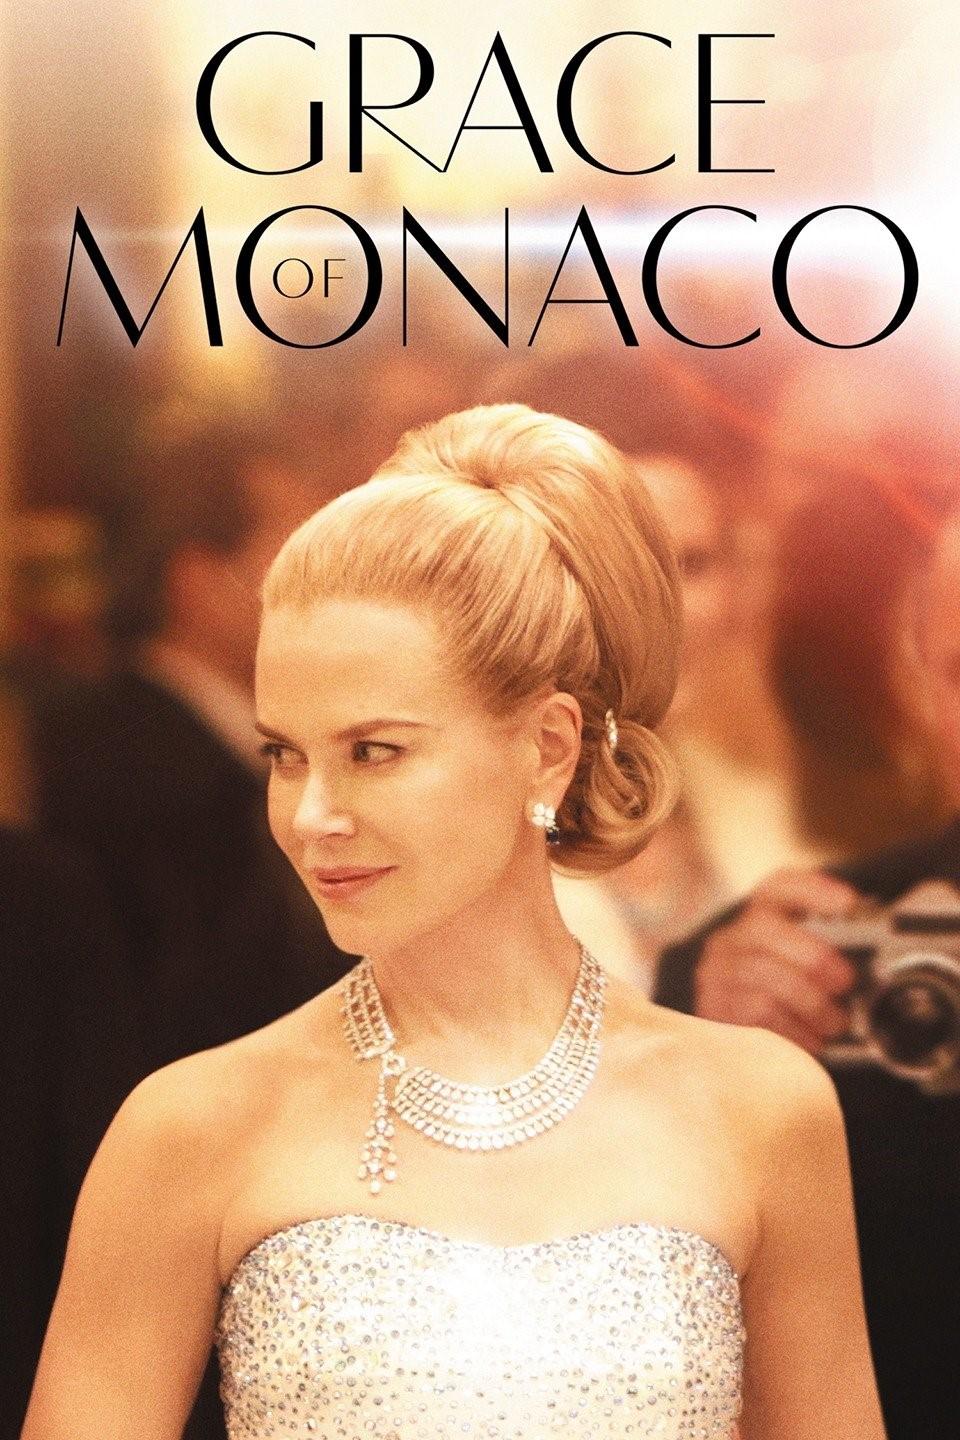 Cafébio GRACE OF MONACO er et intimt portræt af det 20. århundredes mest ikoniske prinsesse. Året er 1962.